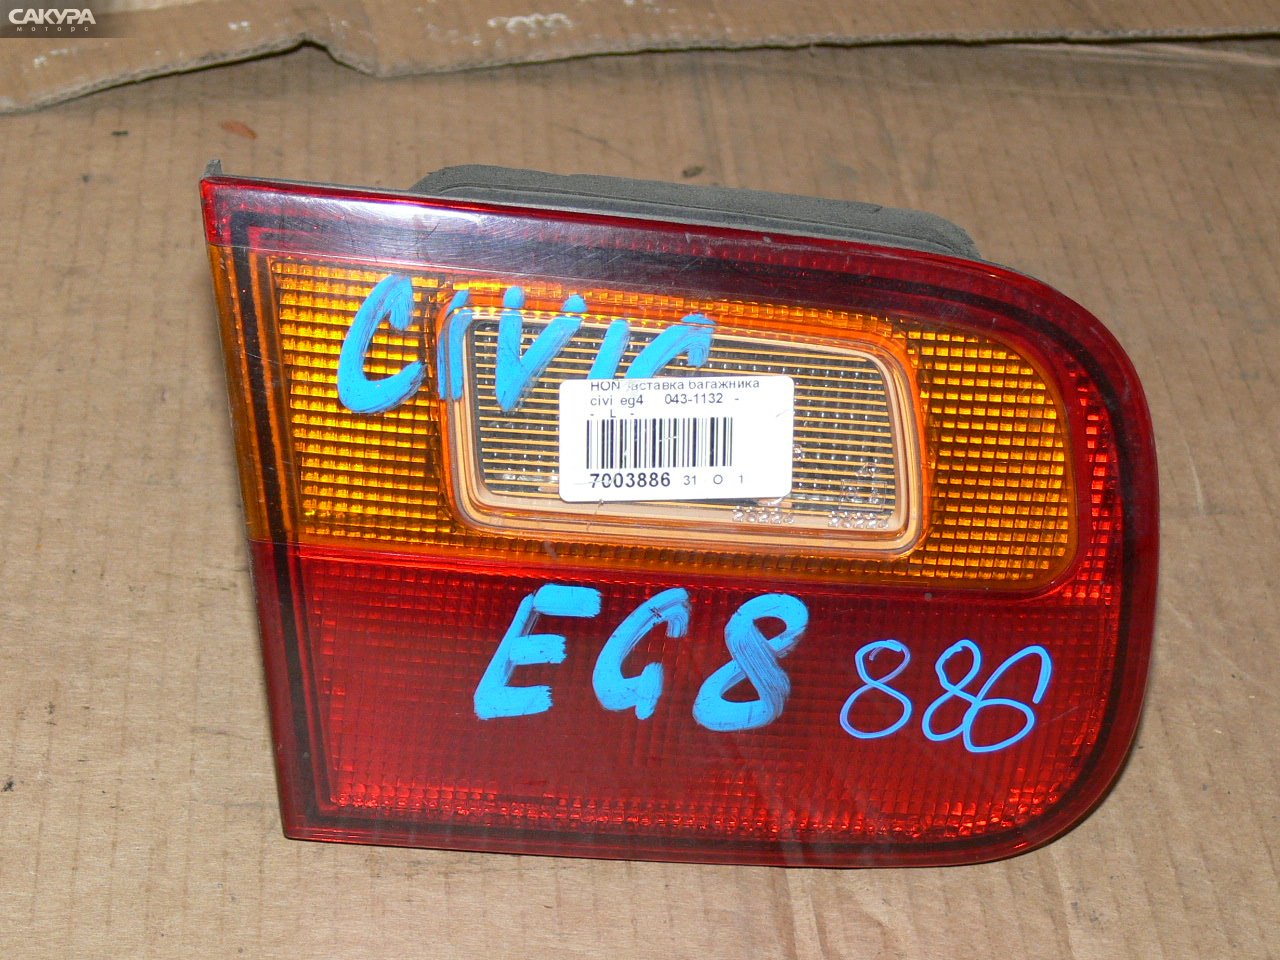 Фонарь вставка багажника левый Honda Civic EG4 043-1132: купить в Сакура Иркутск.